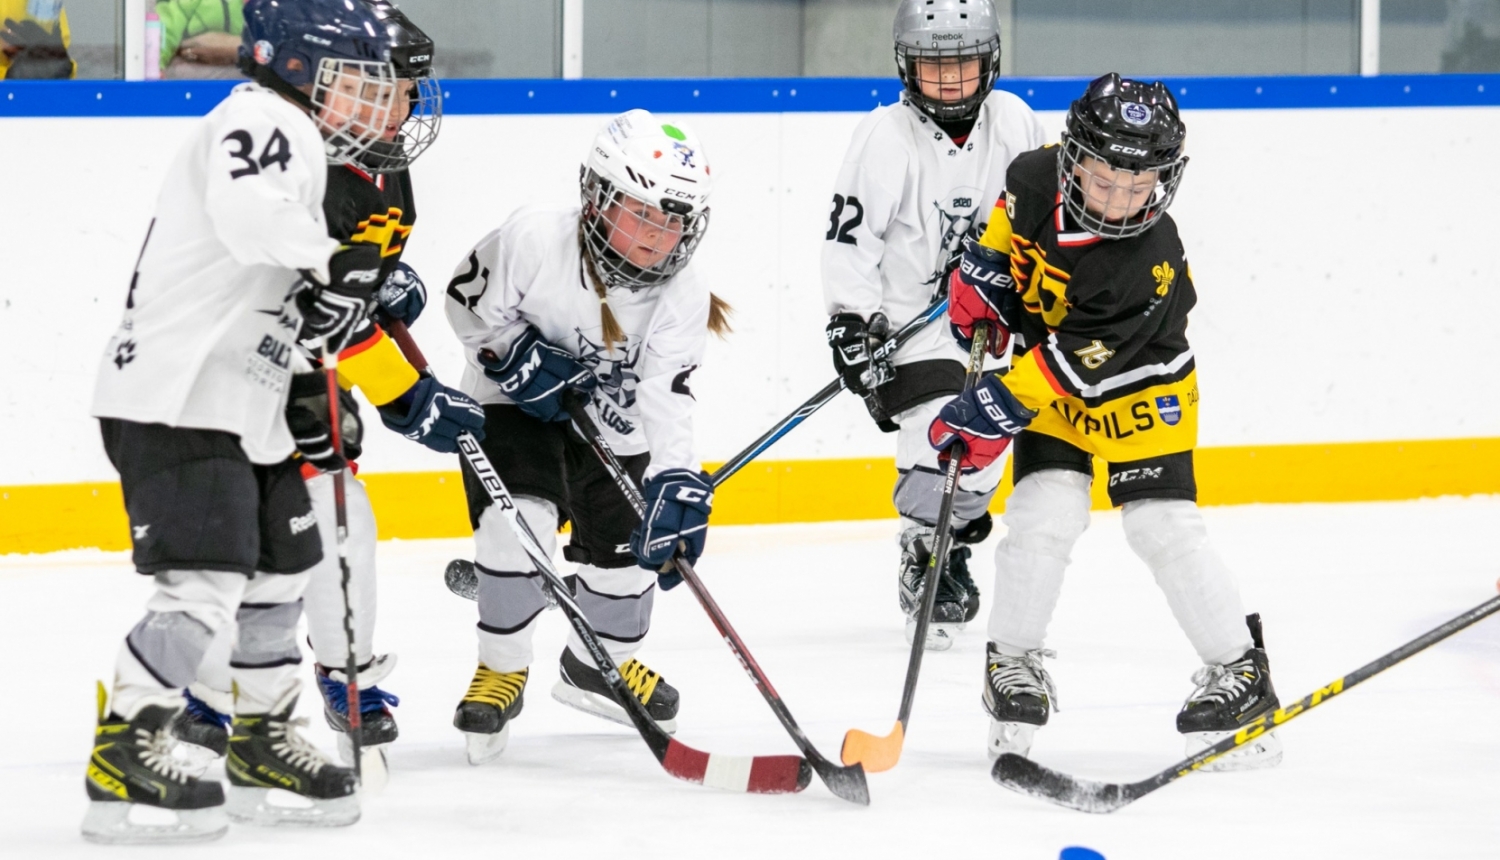 Roks & hokejs - publicitātes foto (4 mazie hokejisti cīnās uz ledus par ripu)